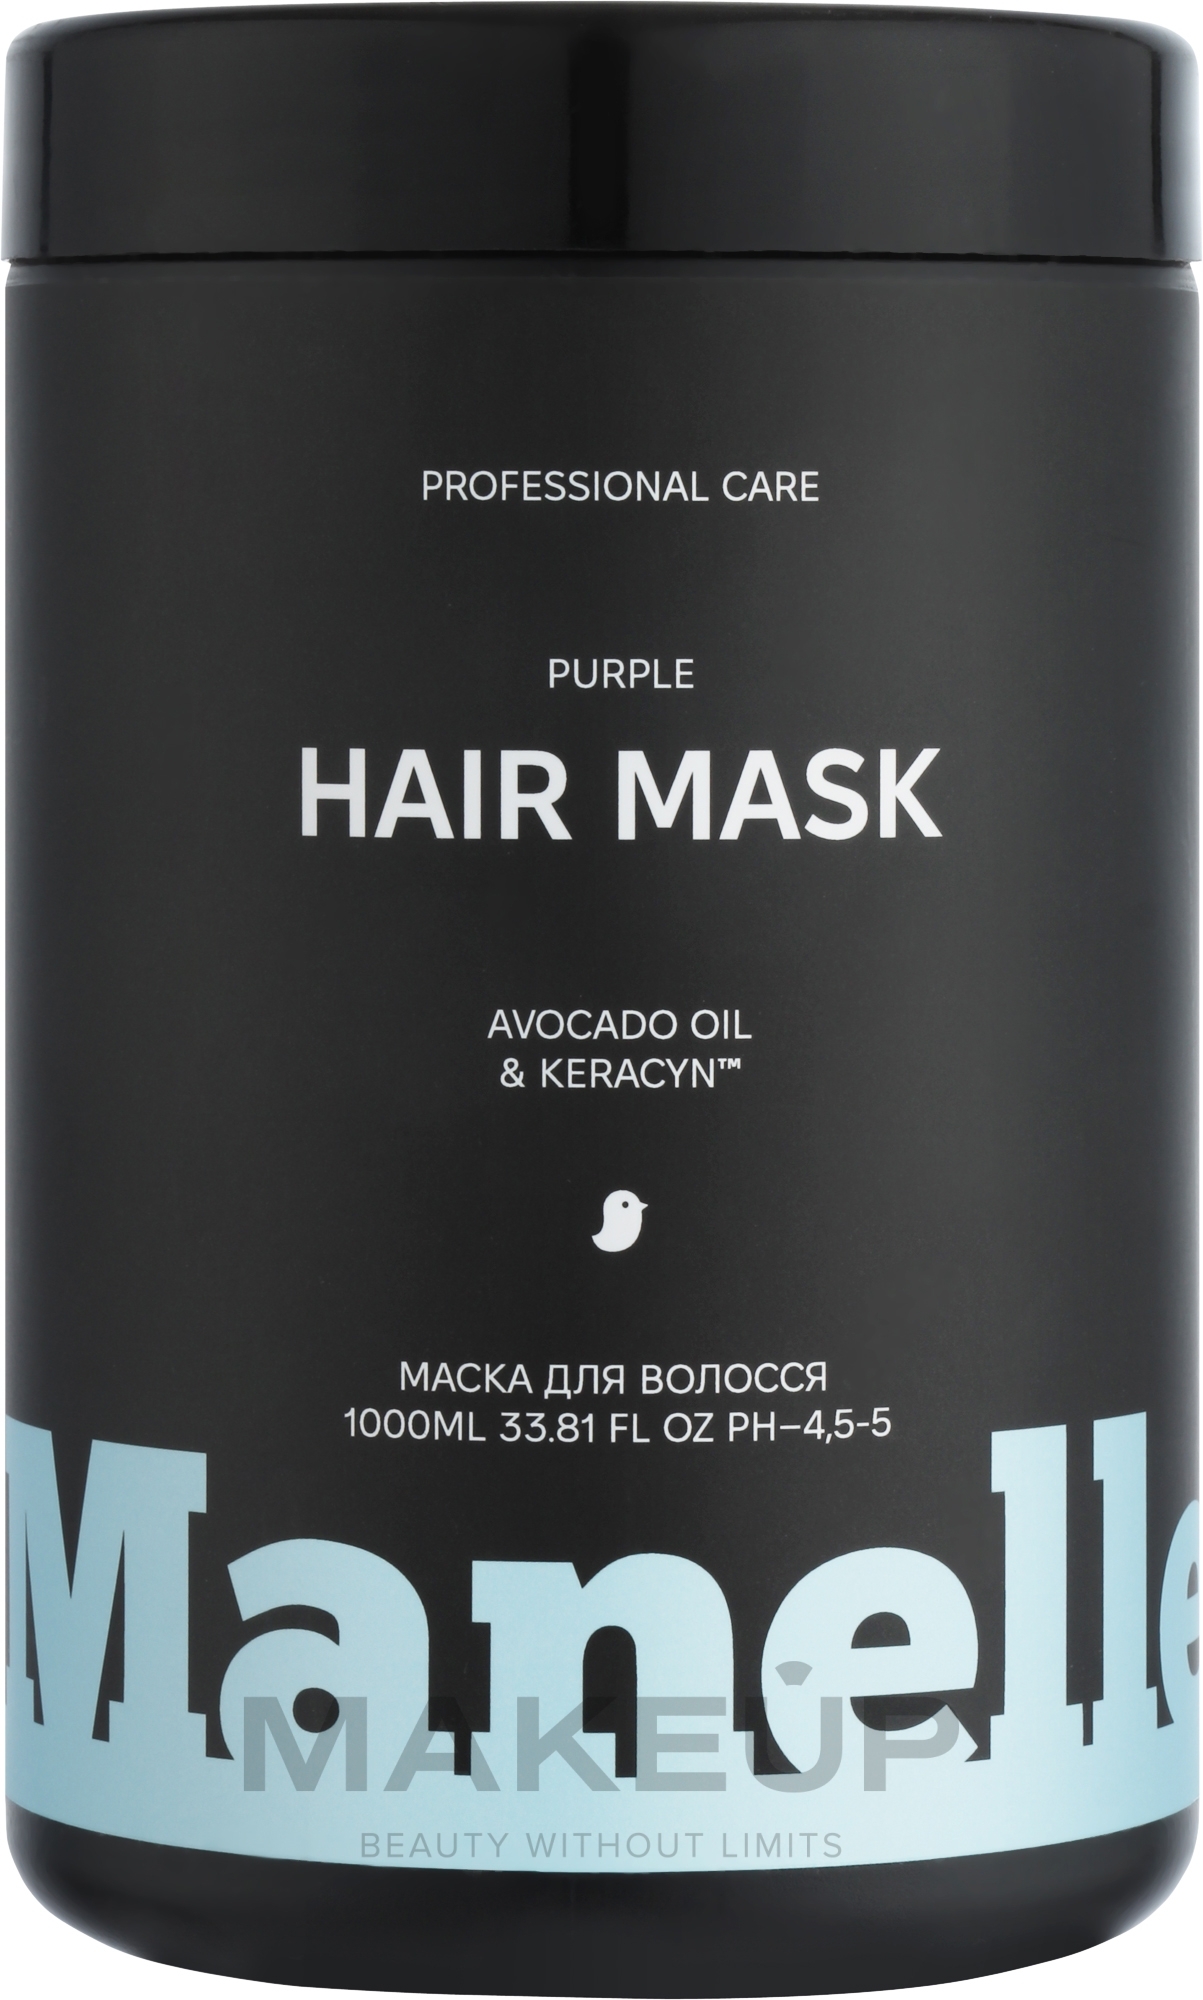 Тонирующая маска для нейтрализации желтизны светлых волос - Manelle Professional Care Avocado Oil & Keracyn Hair Mask — фото 1000ml